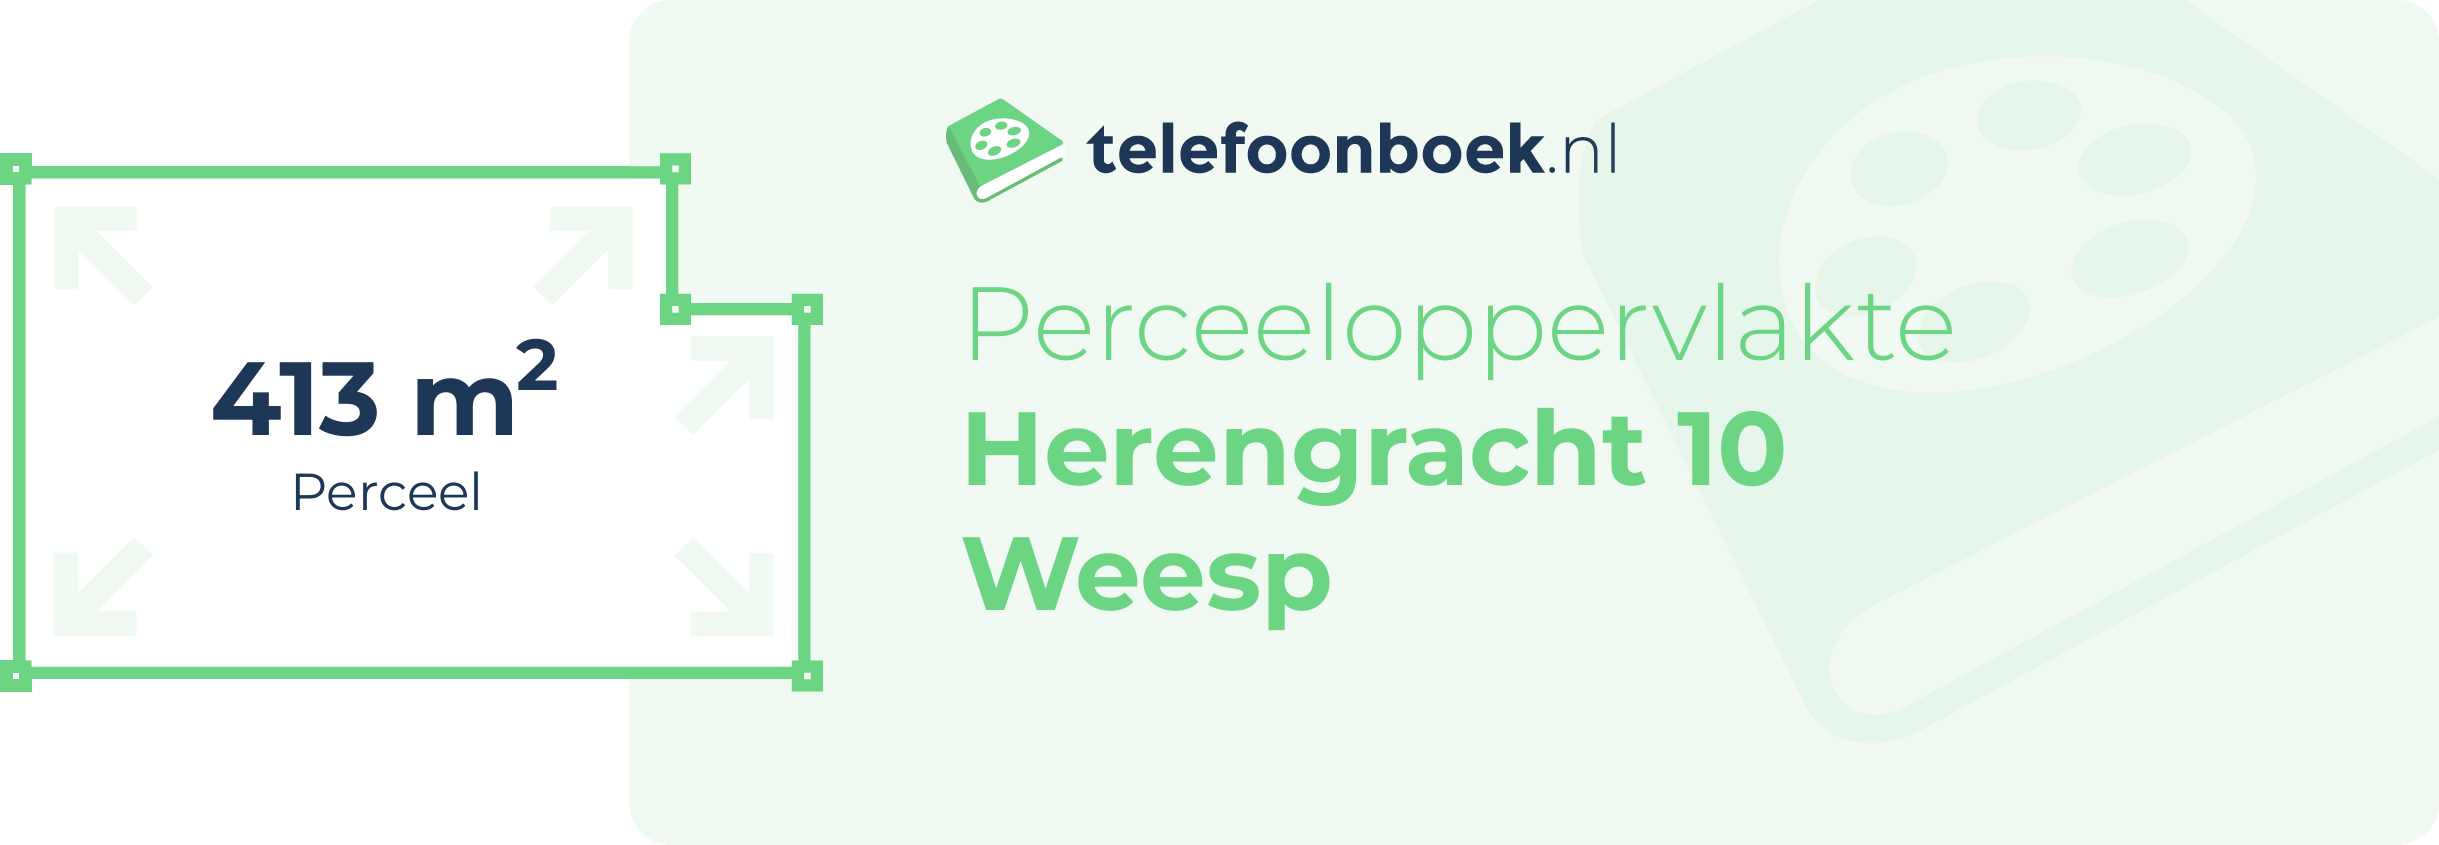 Perceeloppervlakte Herengracht 10 Weesp